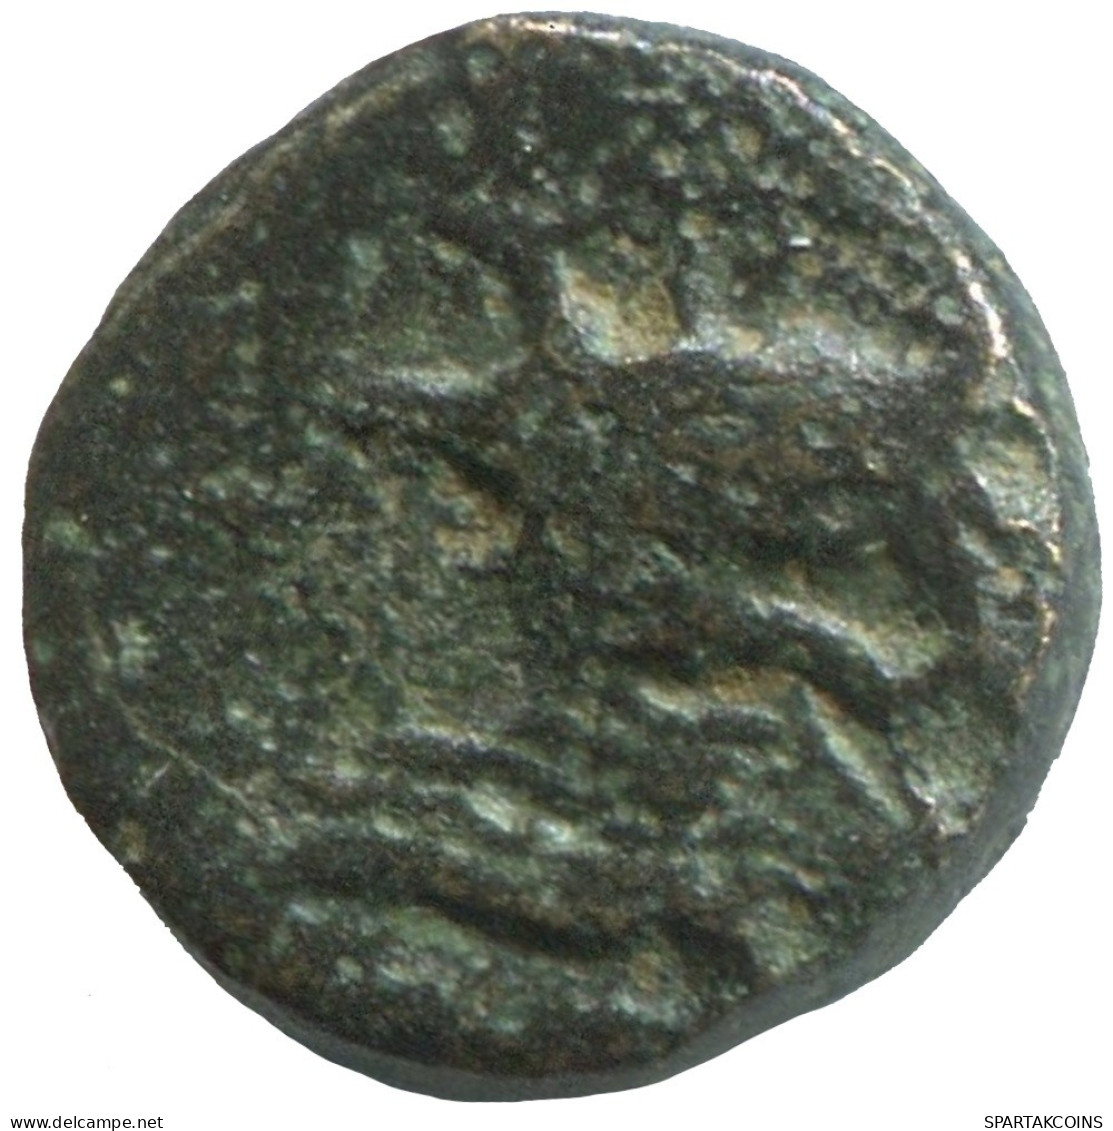 Ancient Antike Authentische Original GRIECHISCHE Münze 1.3g/10mm #SAV1319.11.D.A - Greche